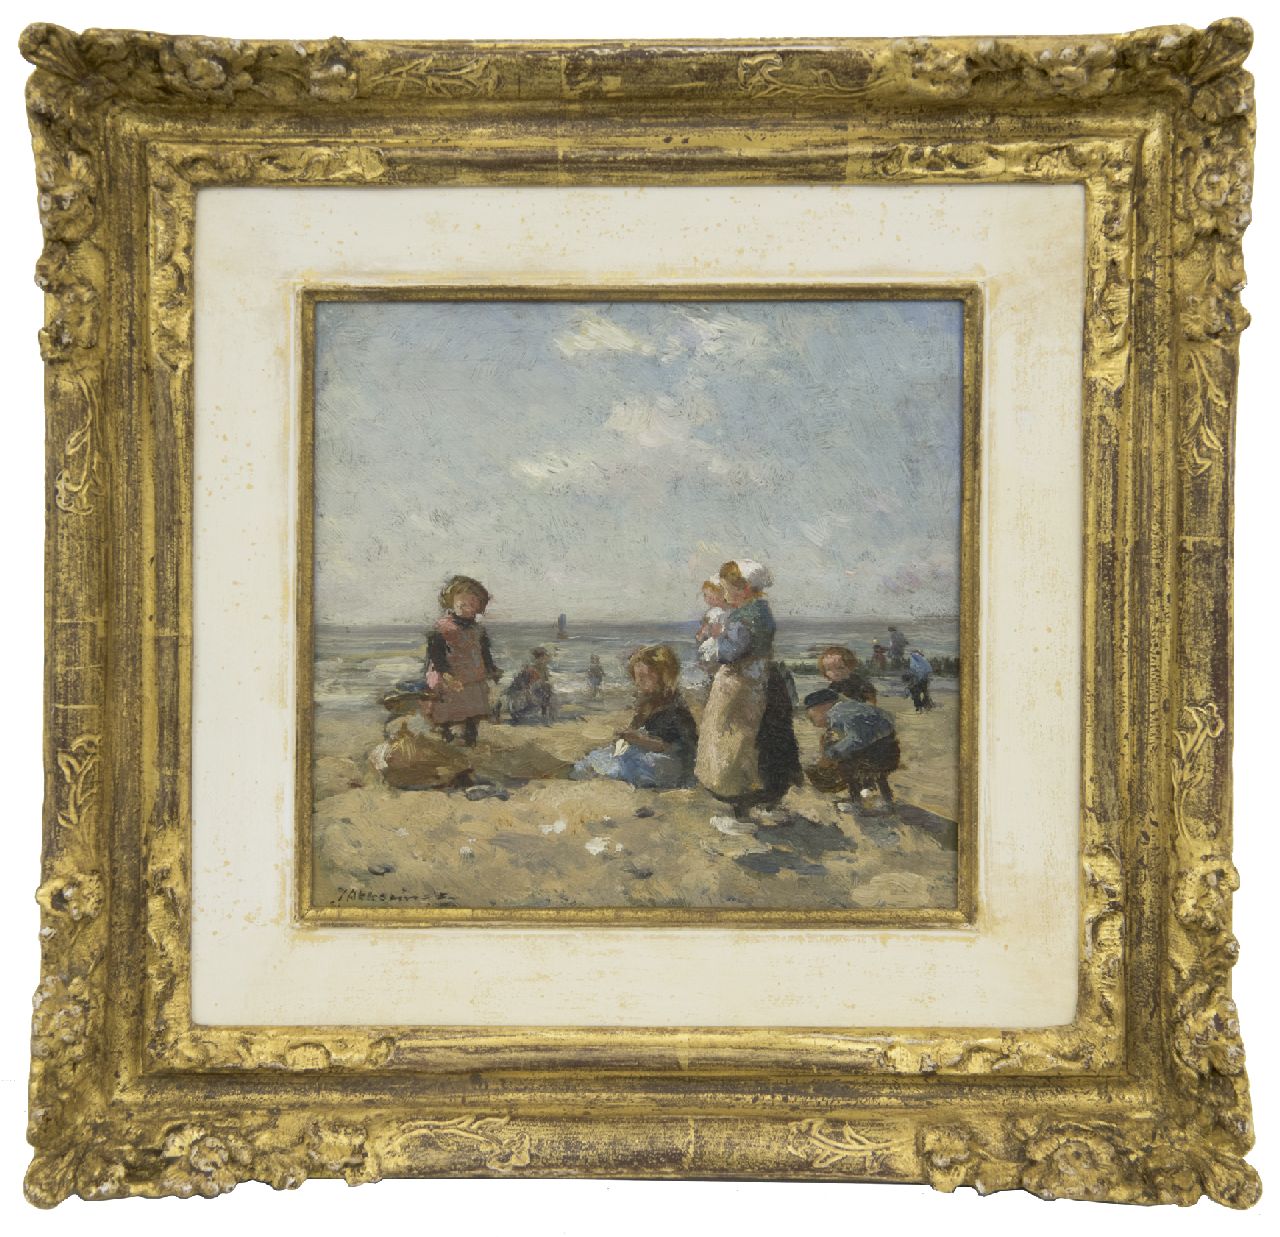 Akkeringa J.E.H.  | 'Johannes Evert' Hendrik Akkeringa, Spelende kinderen op het strand van Scheveningen, olieverf op paneel 16,3 x 16,8 cm, gesigneerd linksonder